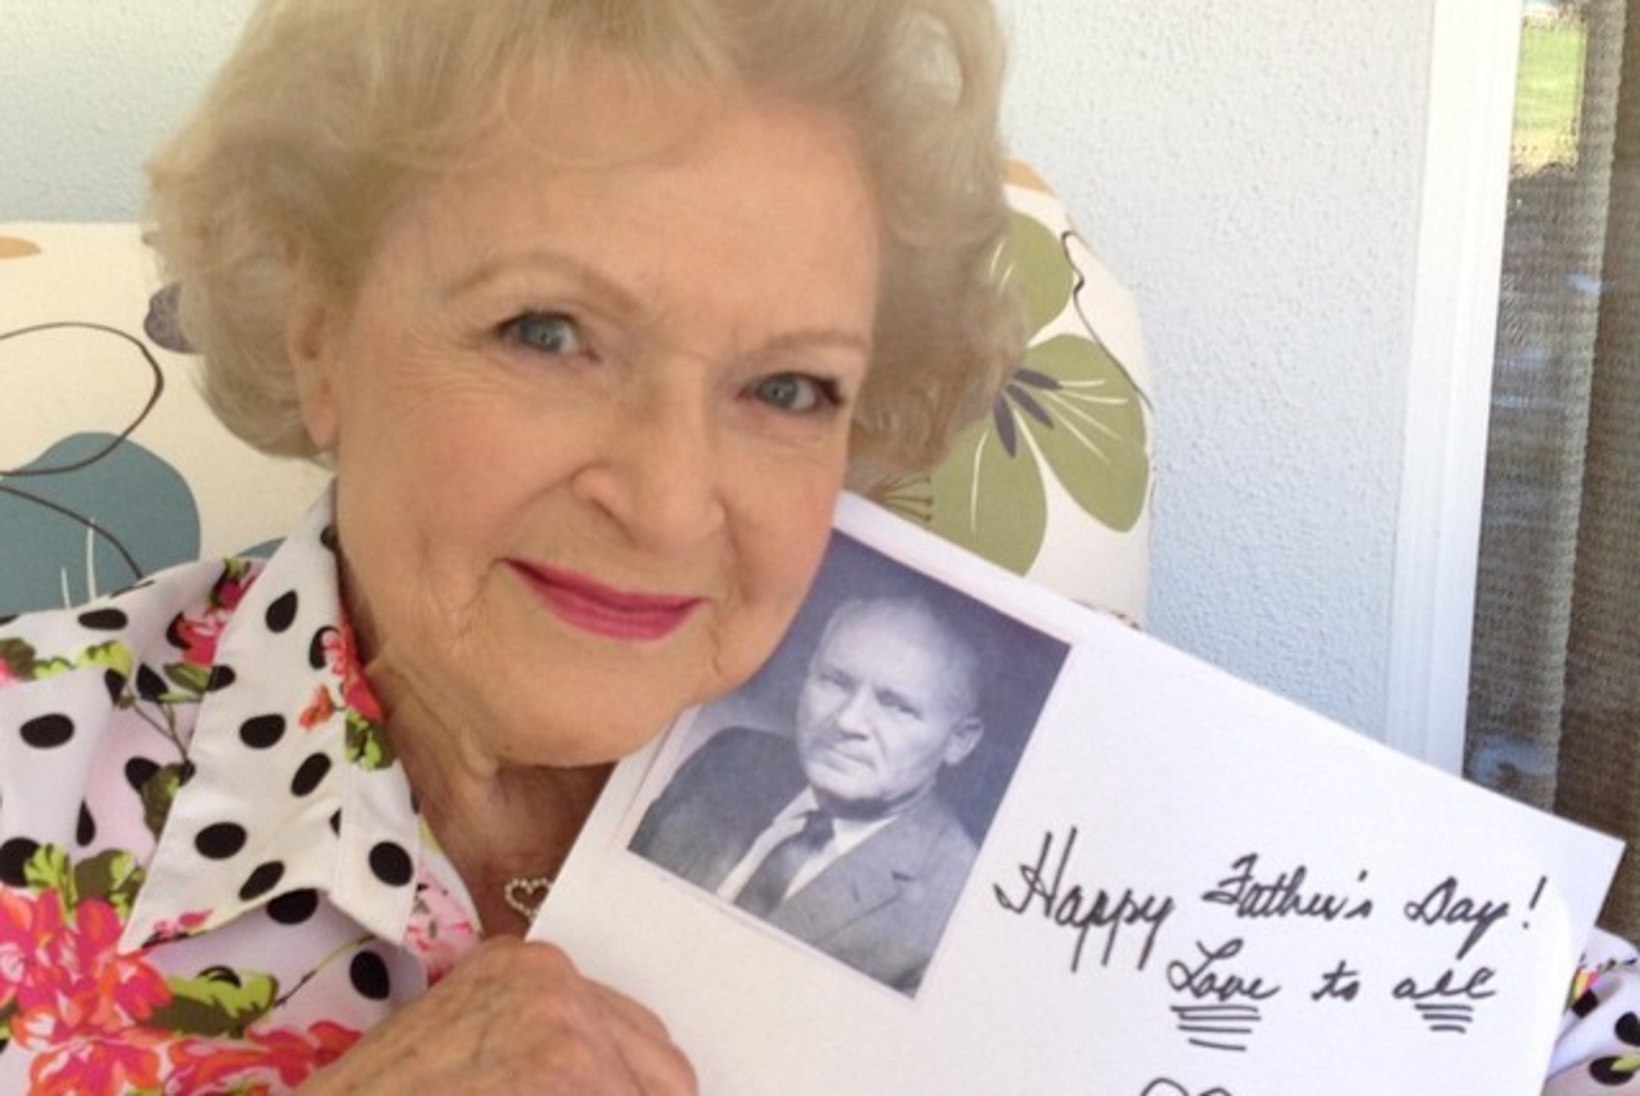 94aastane Betty White on vaba ja vallaline ning ootab kutset kohtingule!